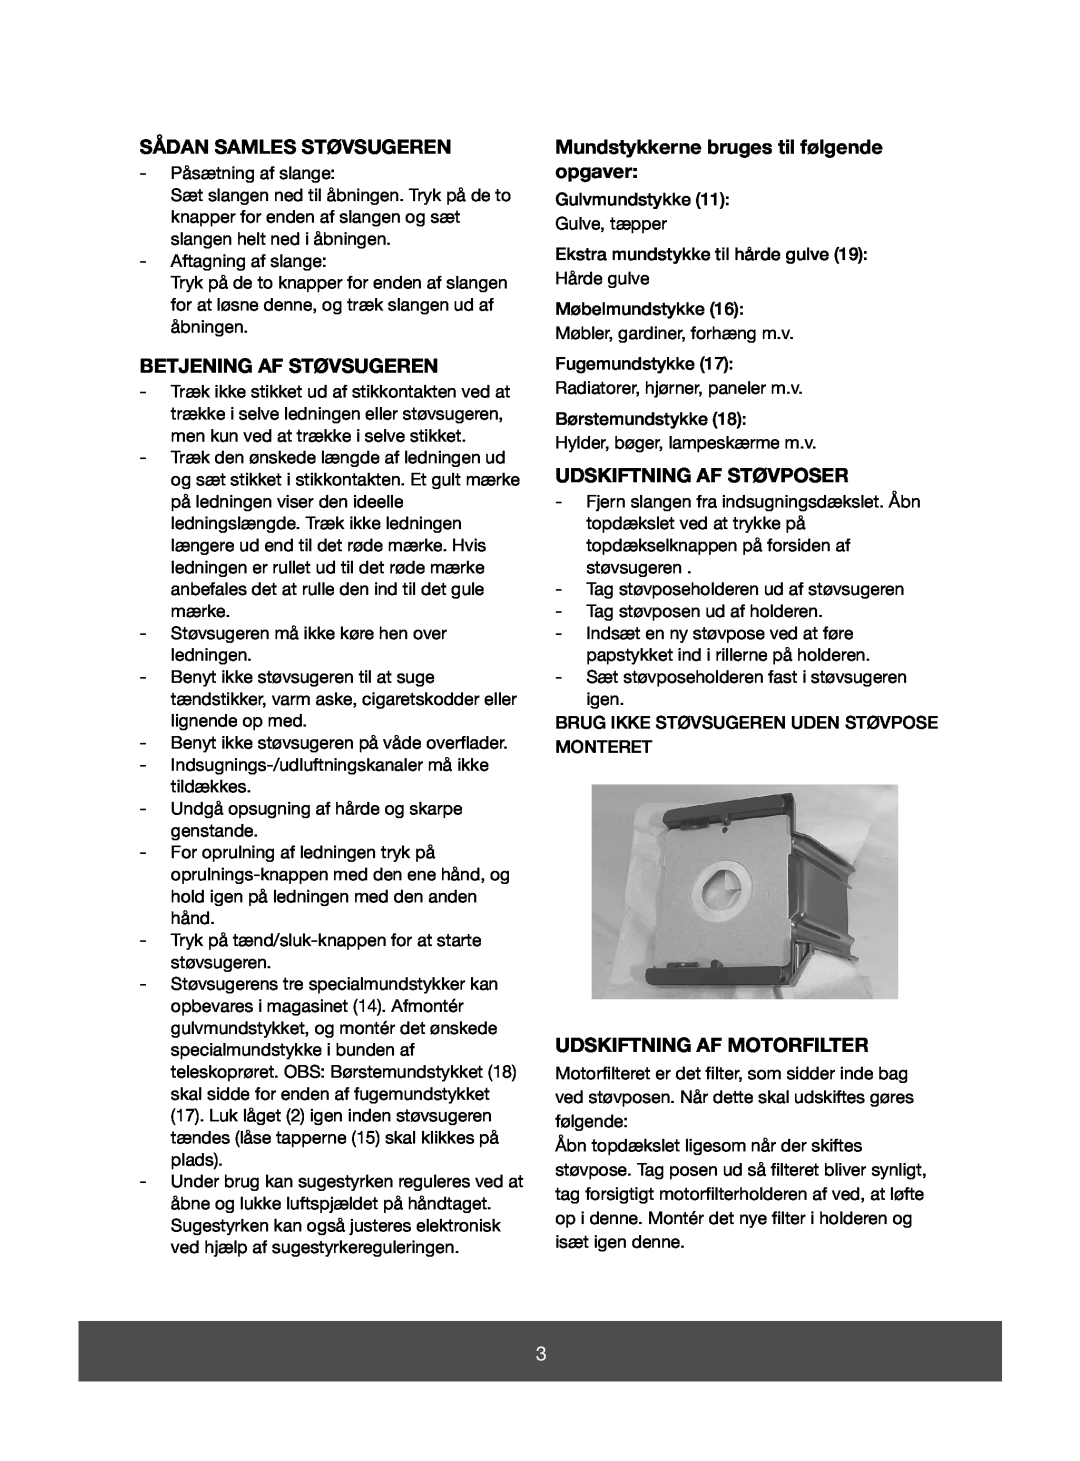 Melissa 640-073 manual Sådan Samles Støvsugeren, Betjening Af Støvsugeren, Mundstykkerne bruges til følgende opgaver 